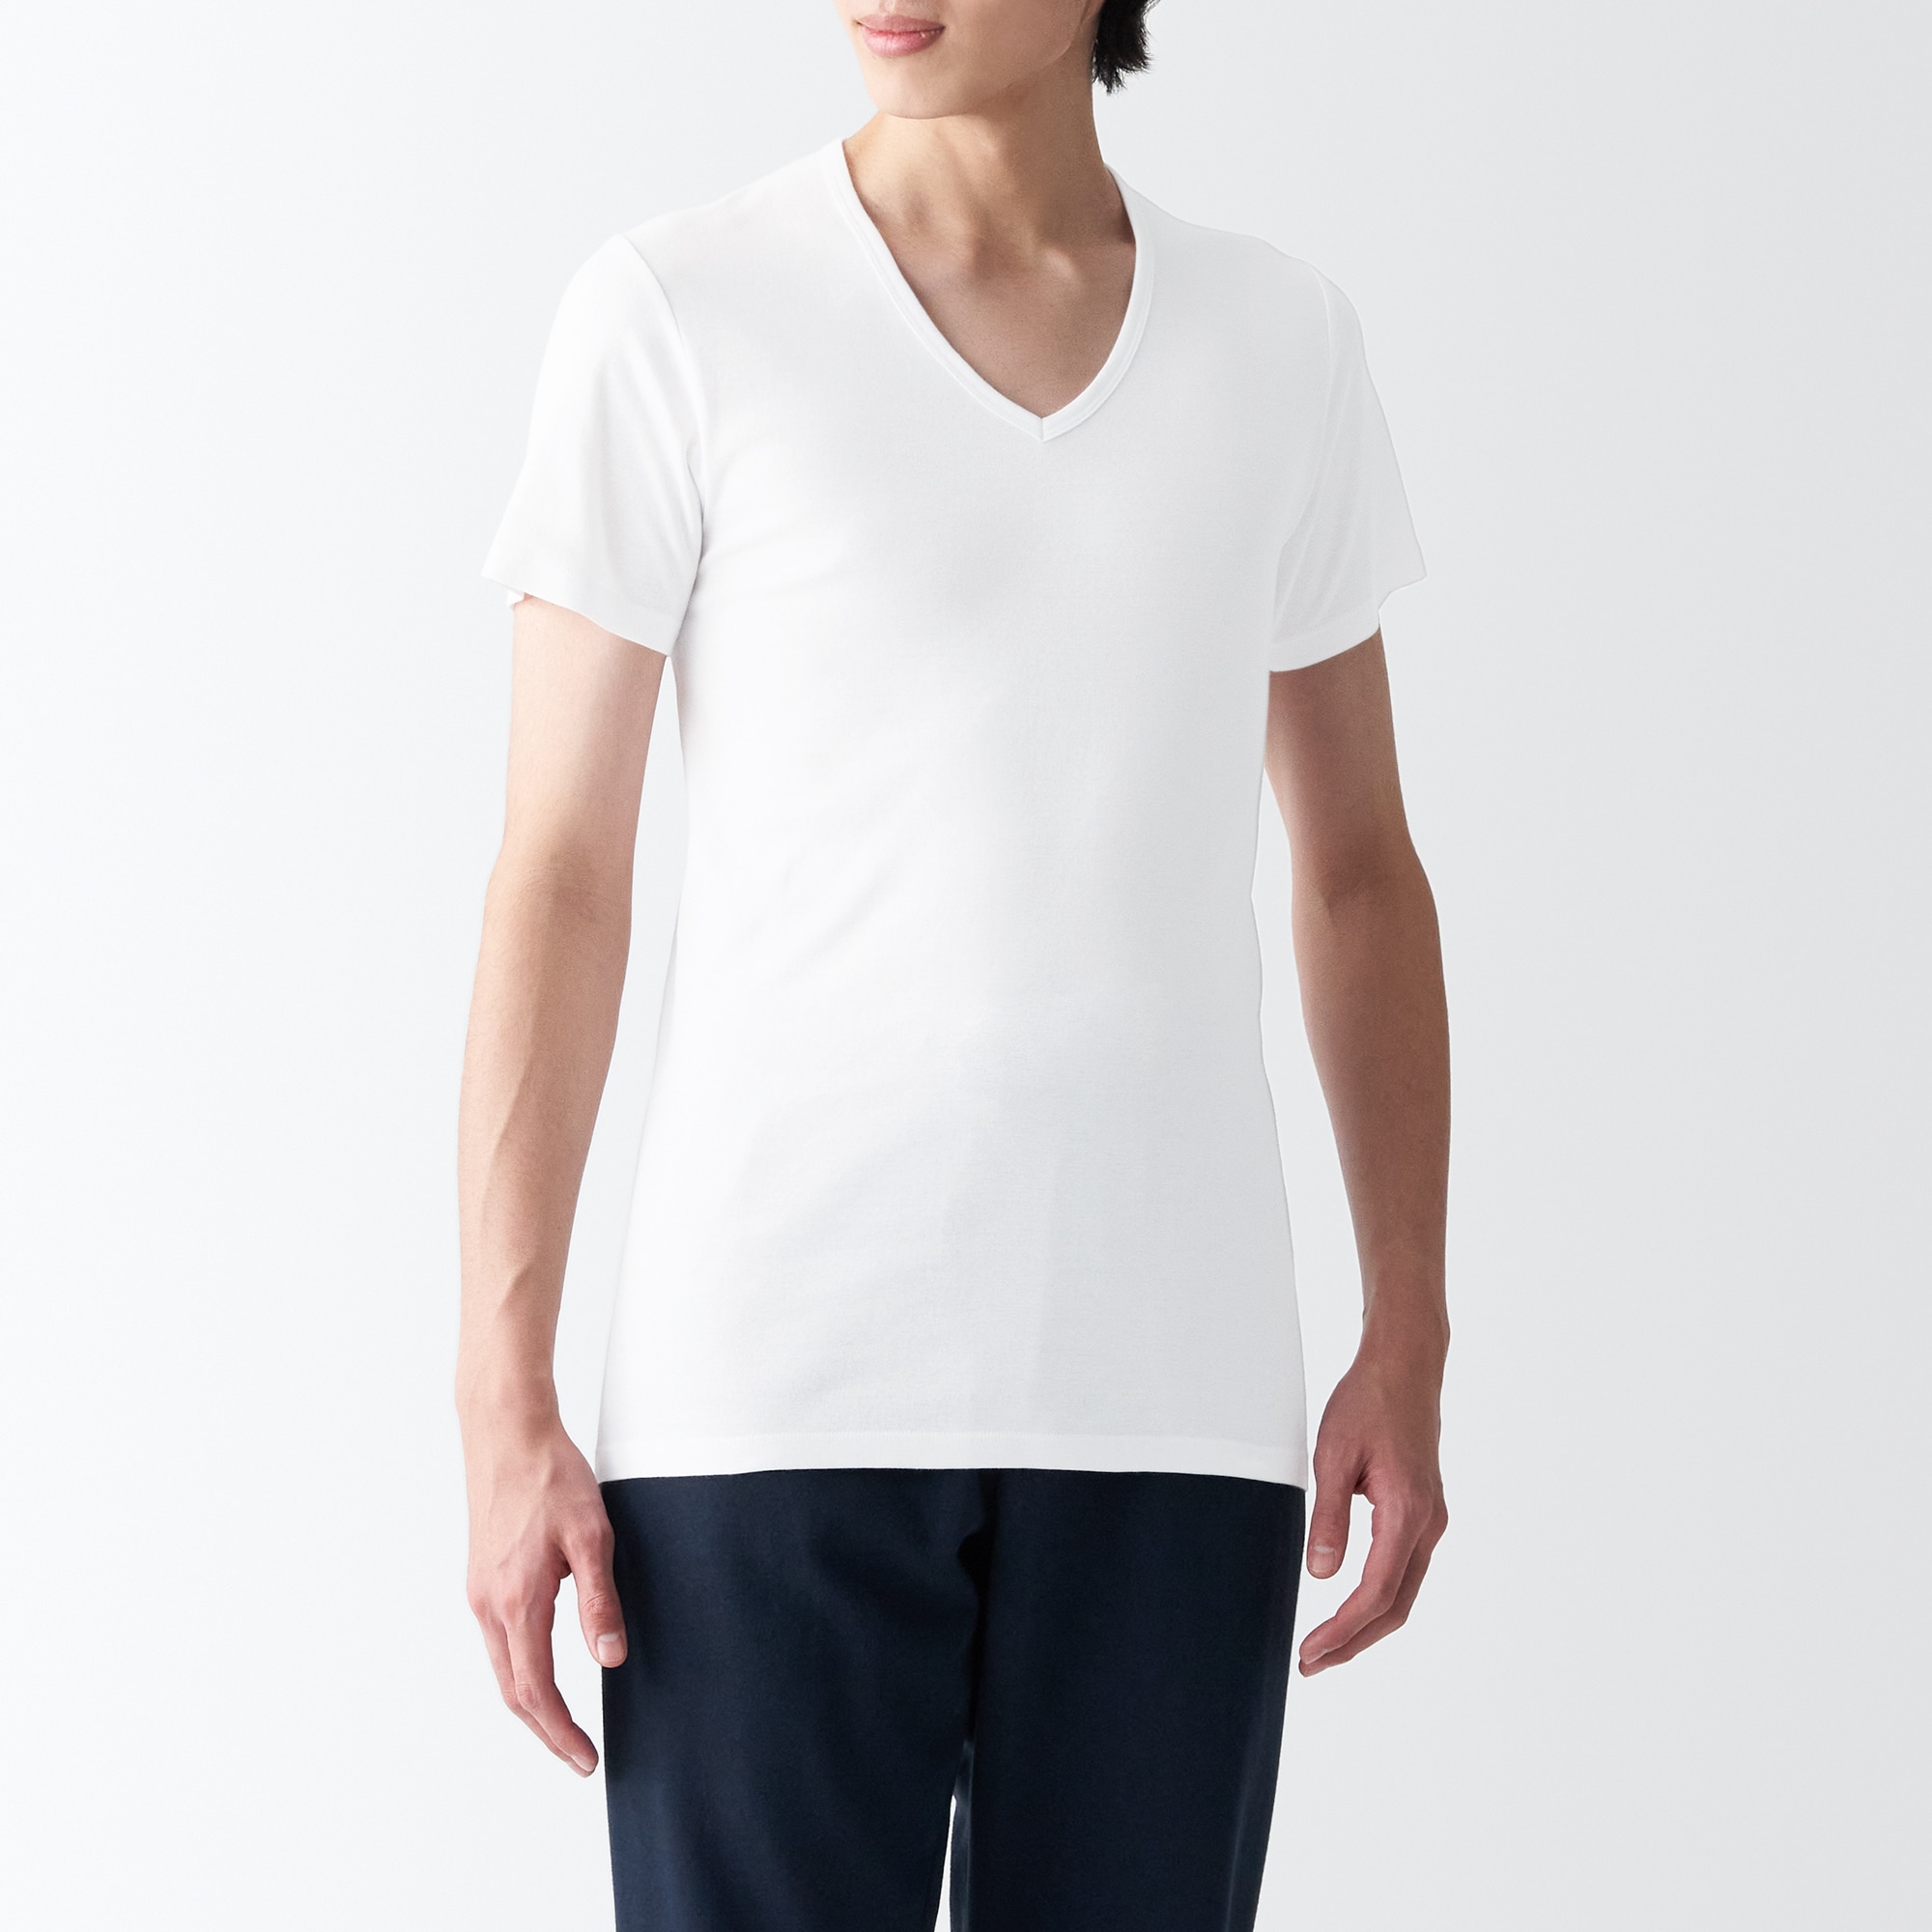 무인양품 일본 겨드랑이 솔기없는 서큘러 브이넥 반팔 티셔츠